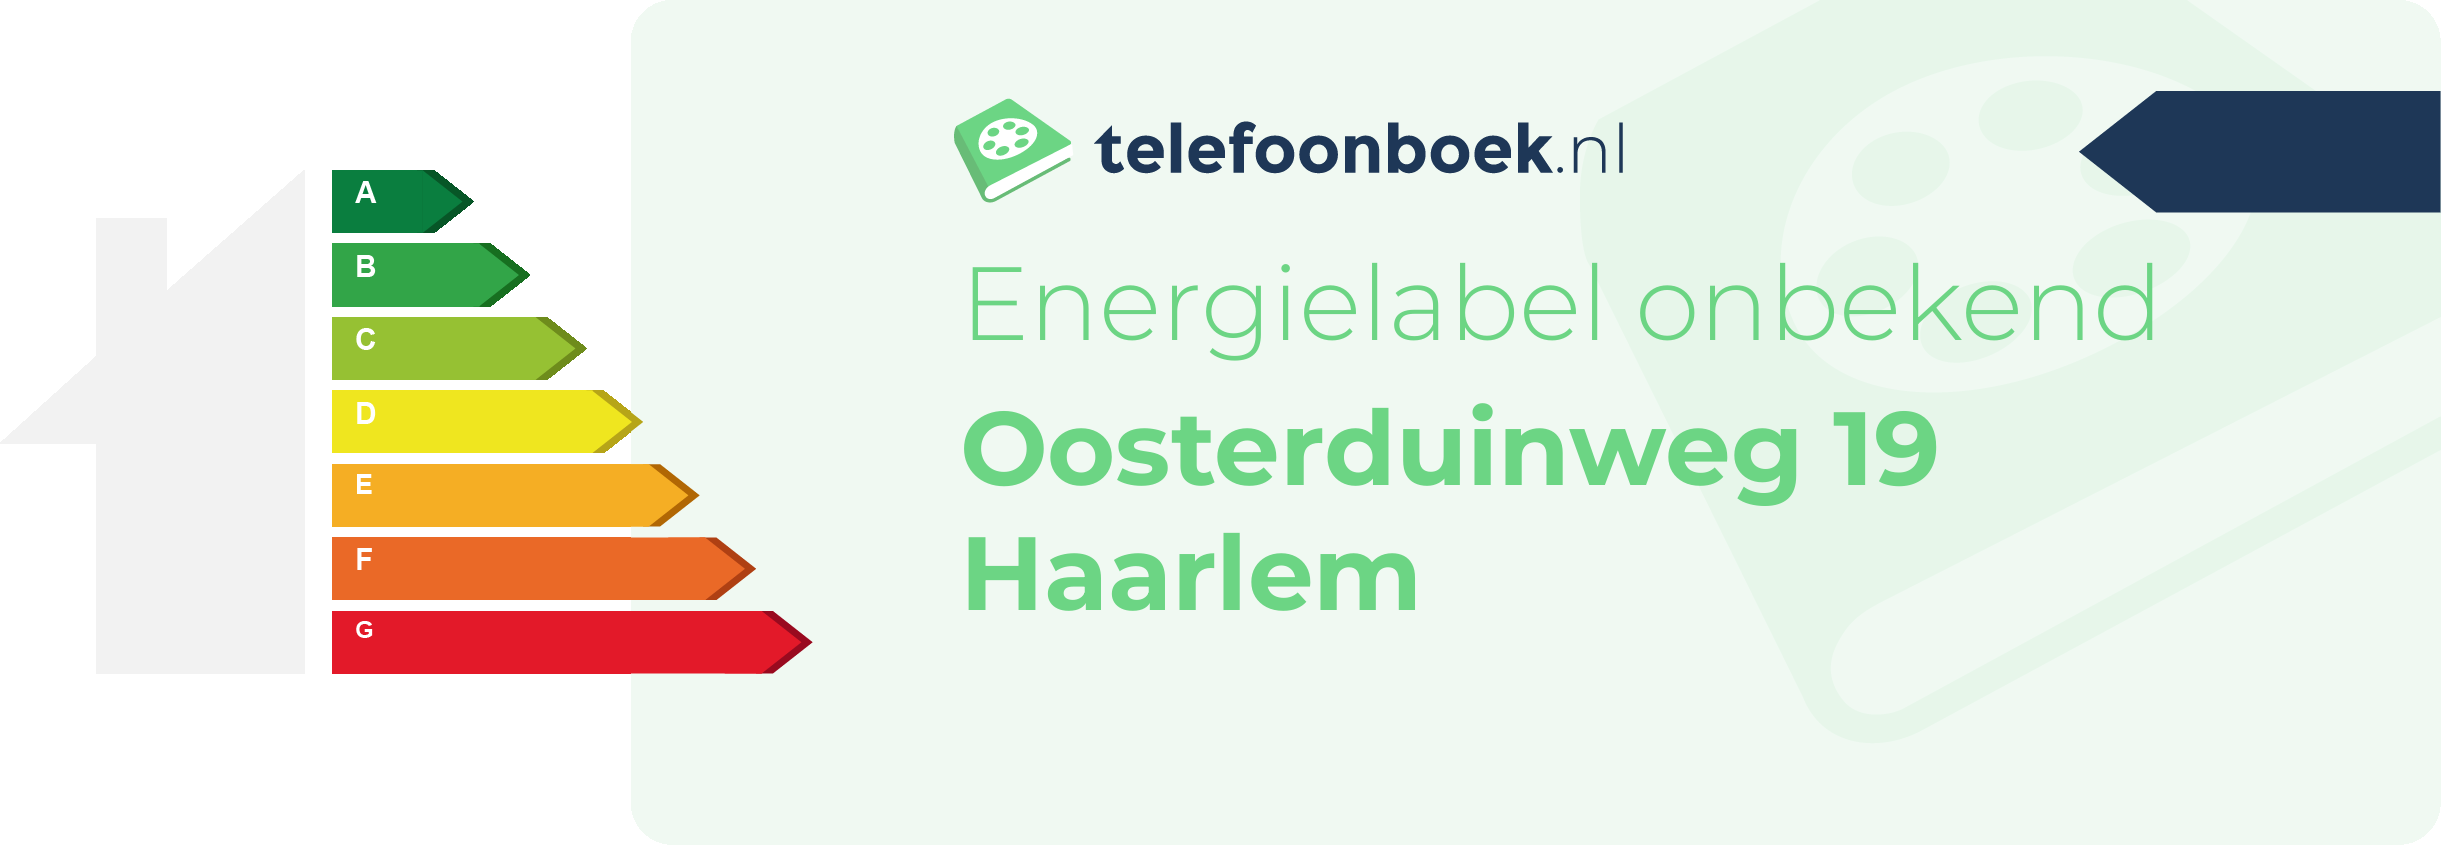 Energielabel Oosterduinweg 19 Haarlem